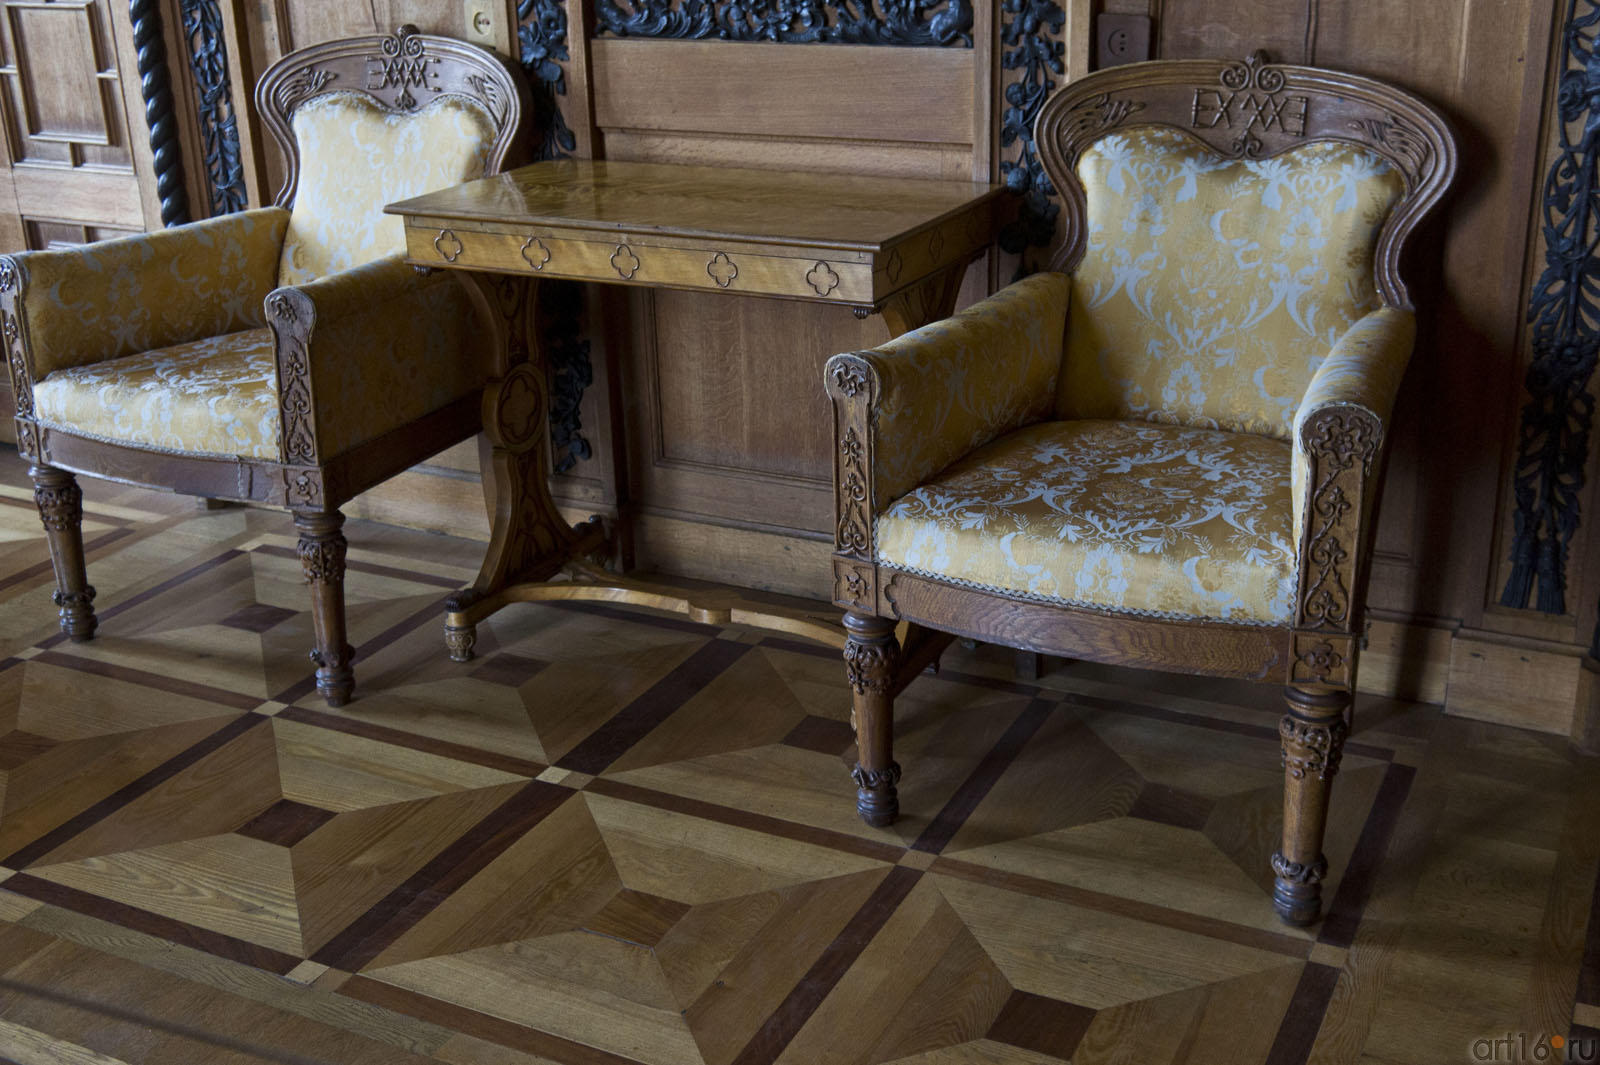 Массивные дубовые кресла  с инициалами владельцев дворца::Алупка, Воронцовский дворец